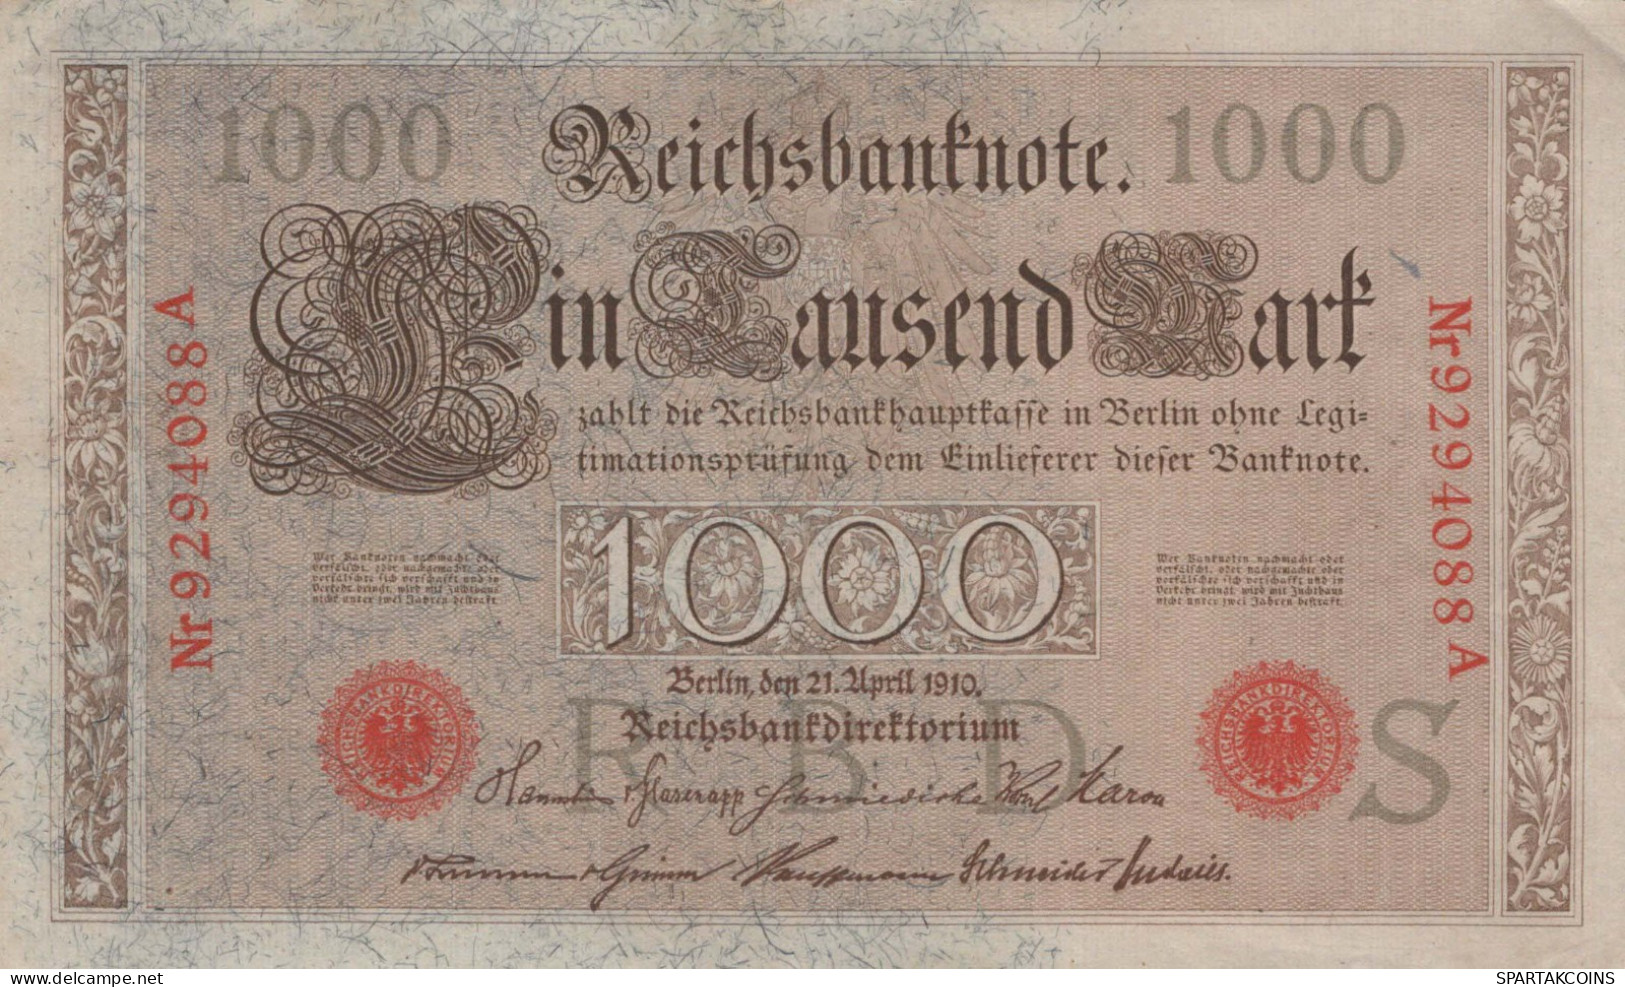 1000 MARK 1910 DEUTSCHLAND Papiergeld Banknote #PL359 - [11] Emisiones Locales